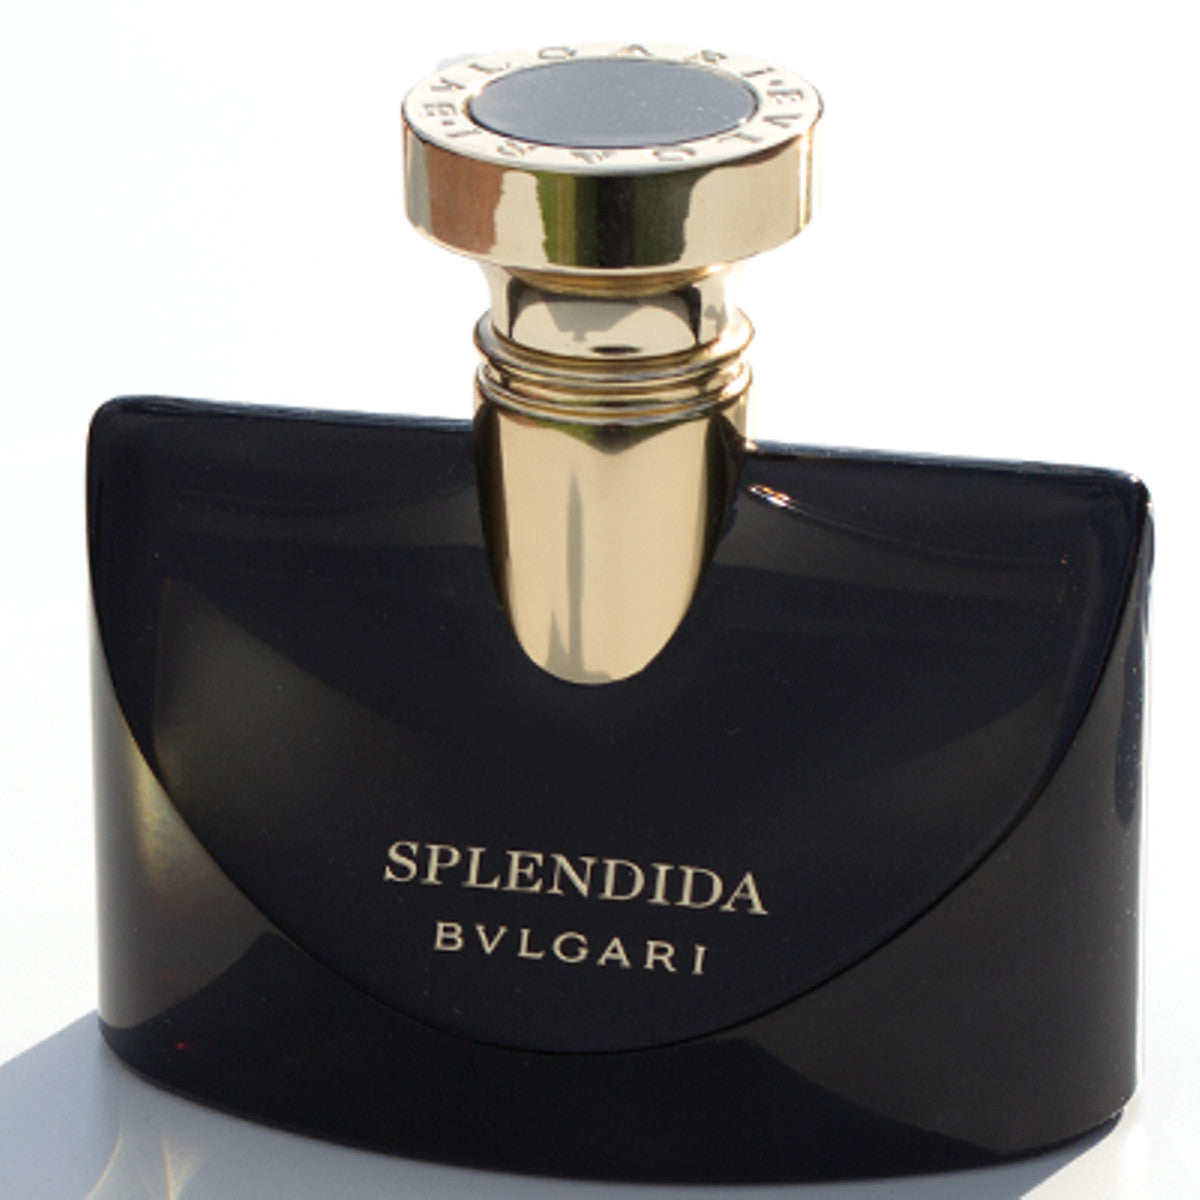 splendida bvlgari perfume